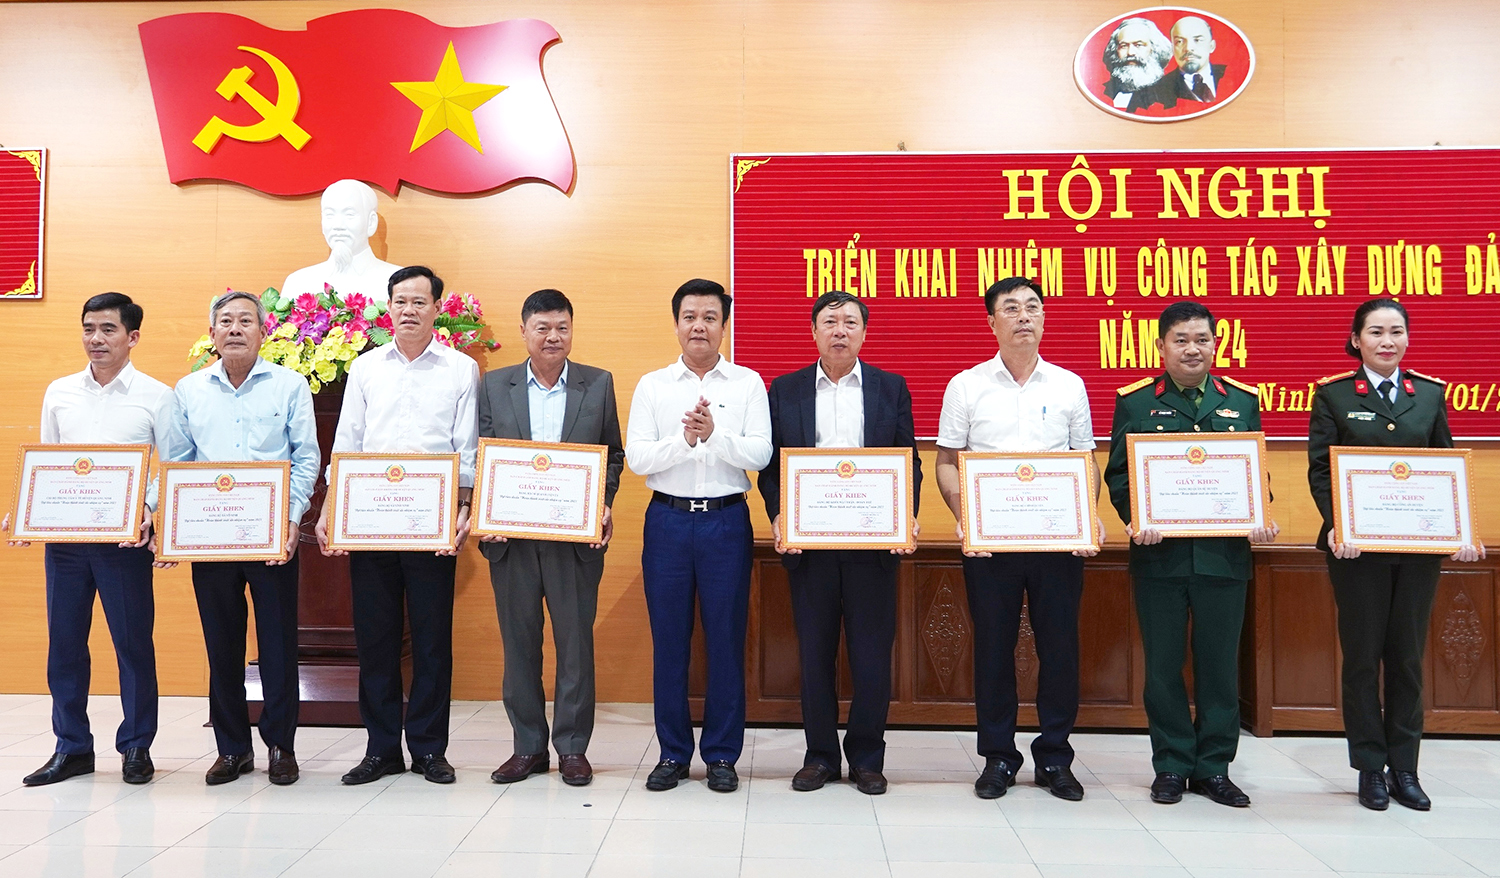 Quảng Ninh: Triển khai nhiệm vụ công tác xây dựng Đảng năm 2024